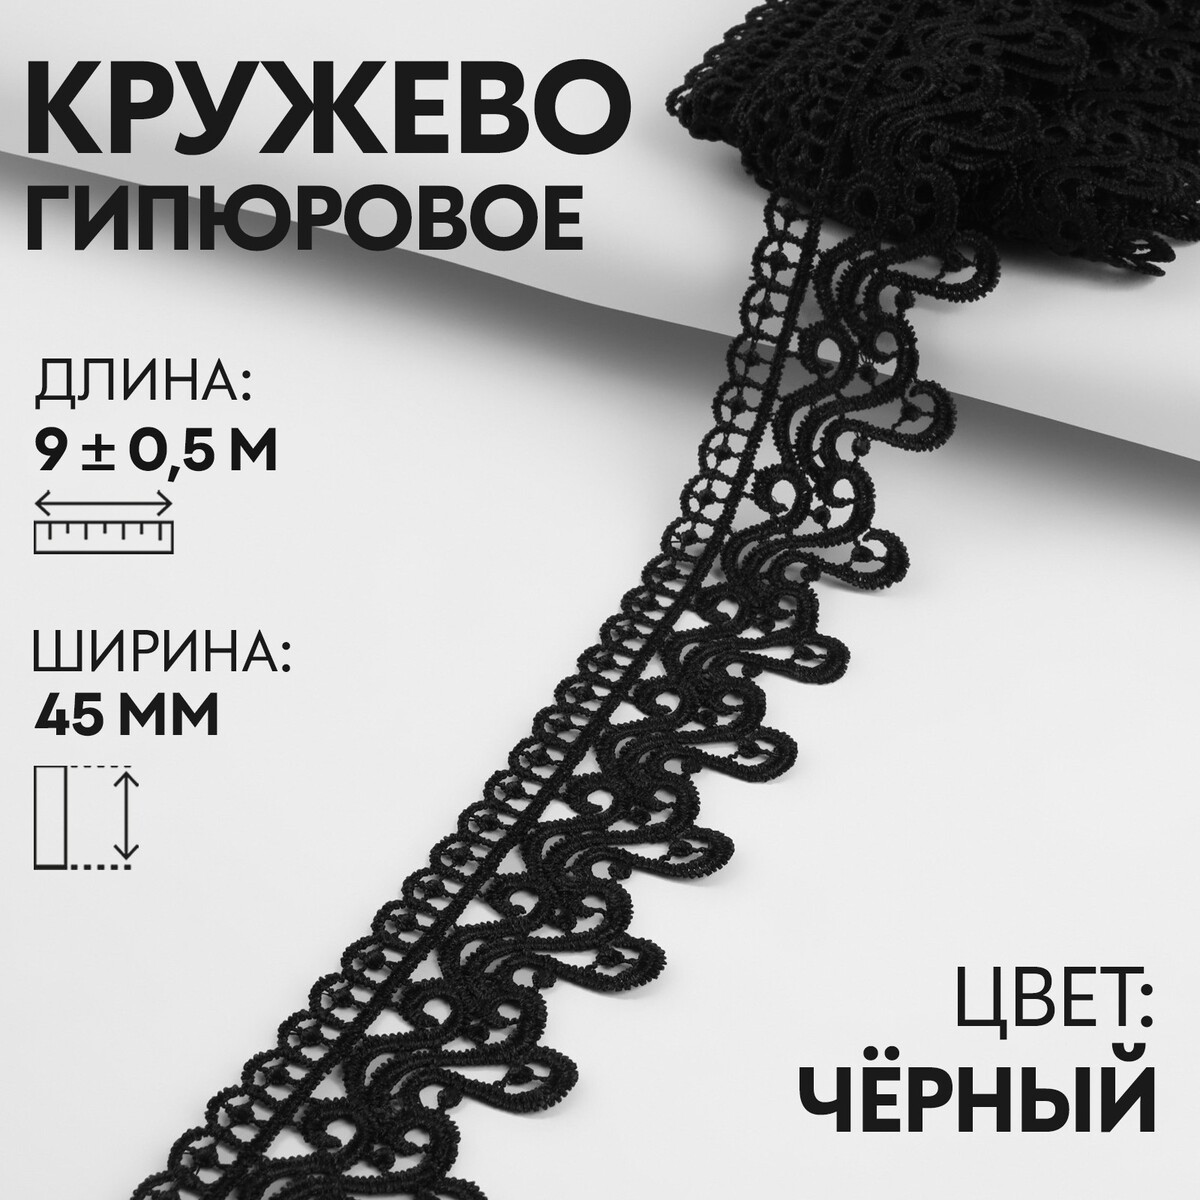 Кружево гипюровое, 45 мм × 9 ± 0,5 м, цвет черный